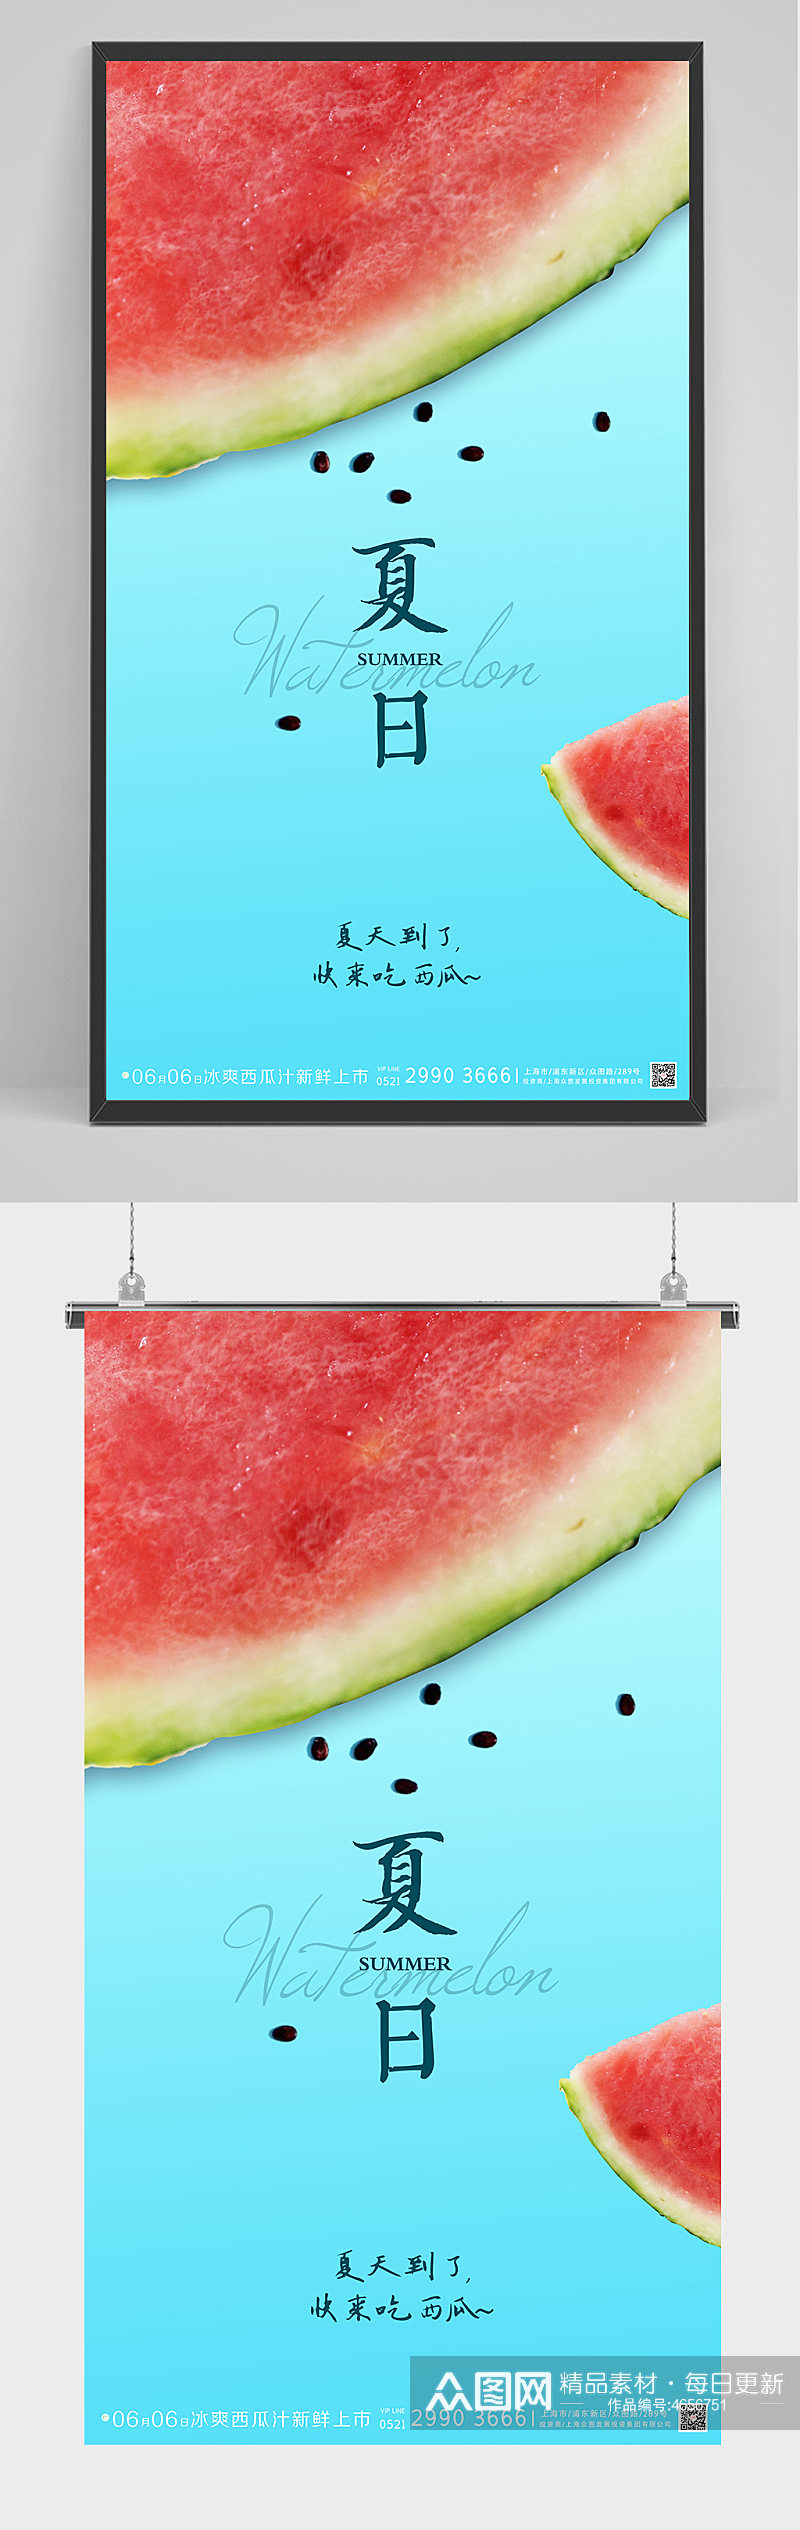 夏季夏日夏天水果西瓜饮料饮品海报素材